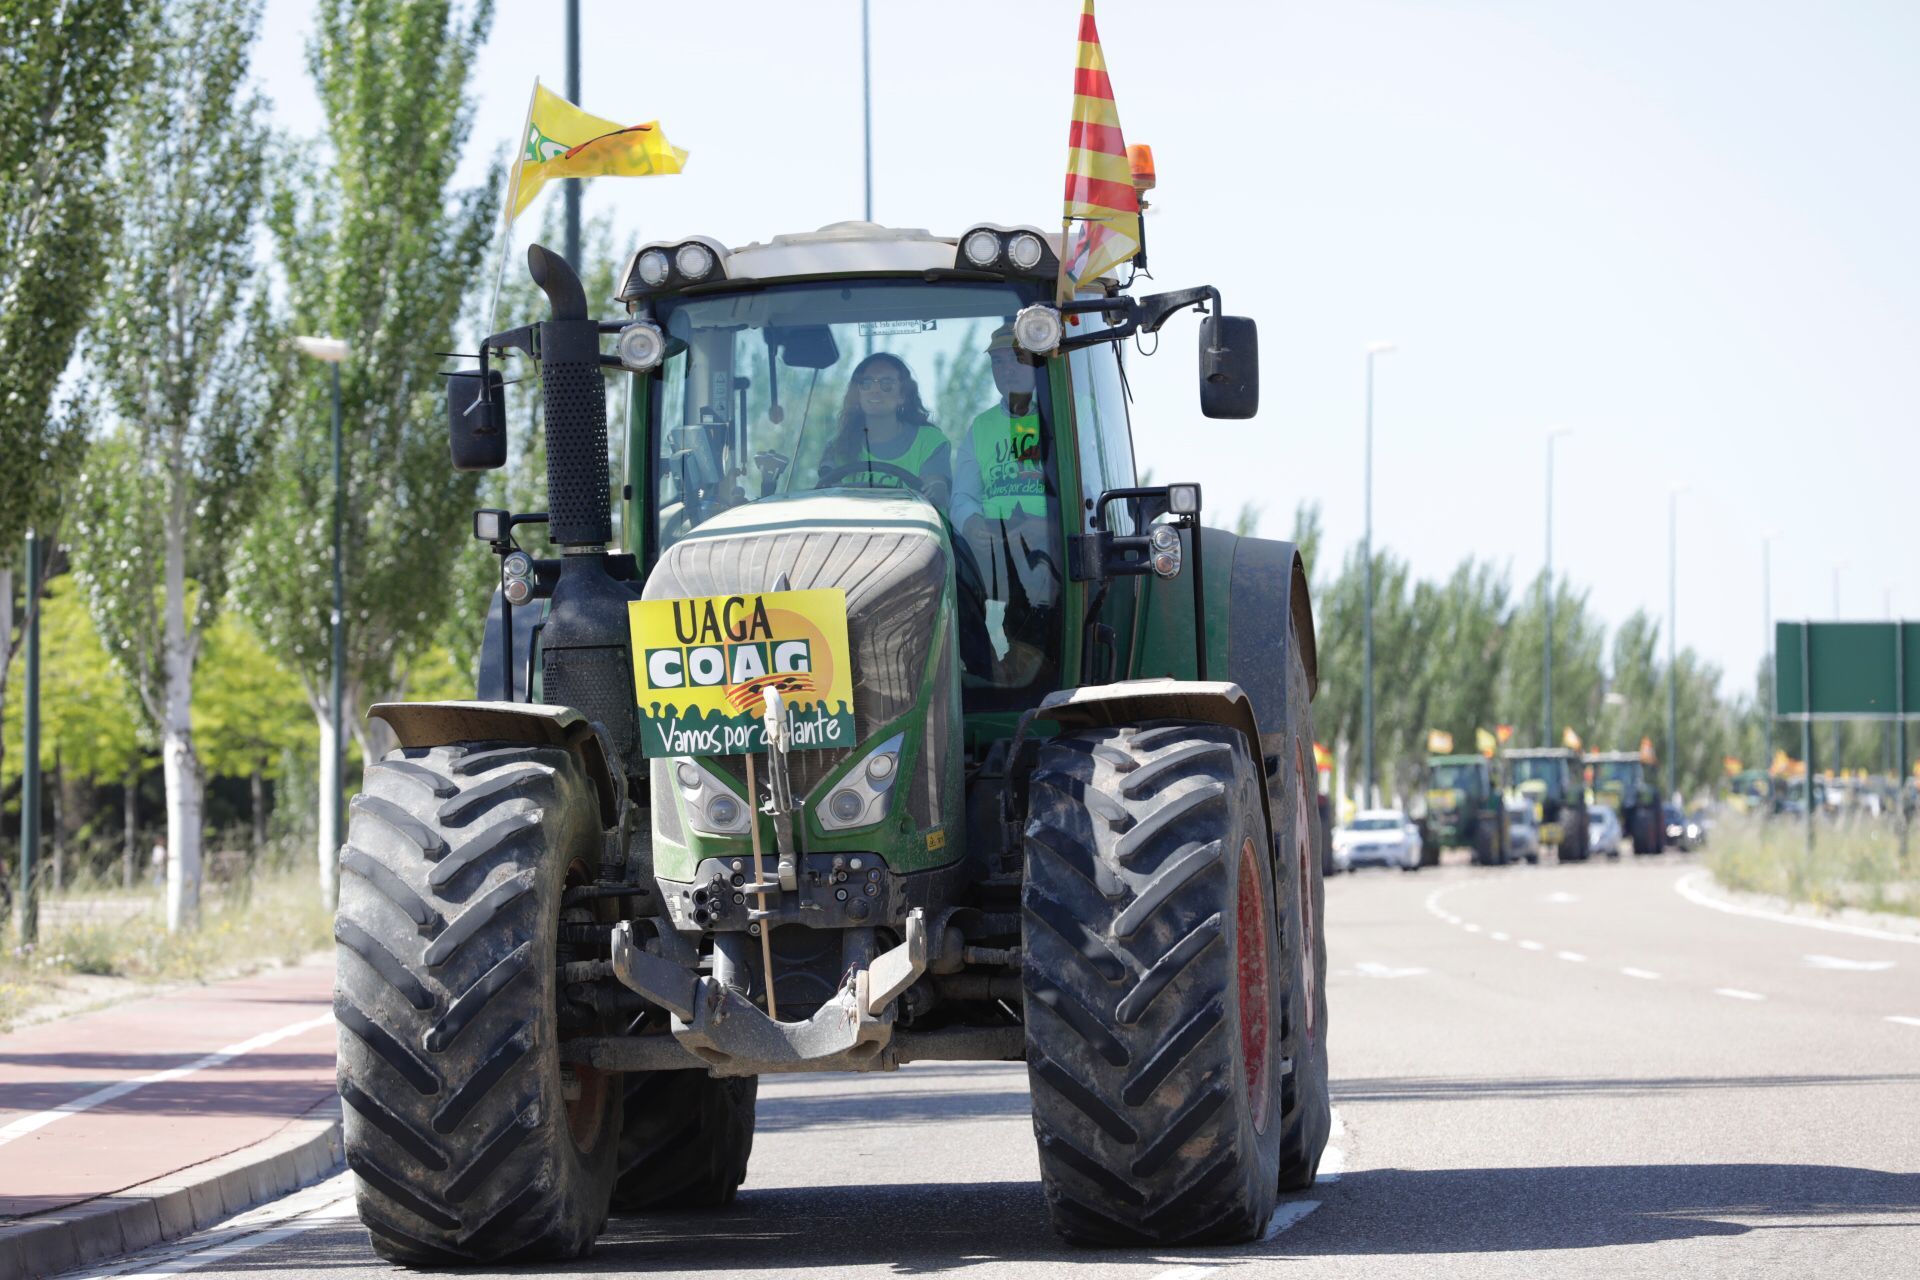 Tractorada en Zaragoza